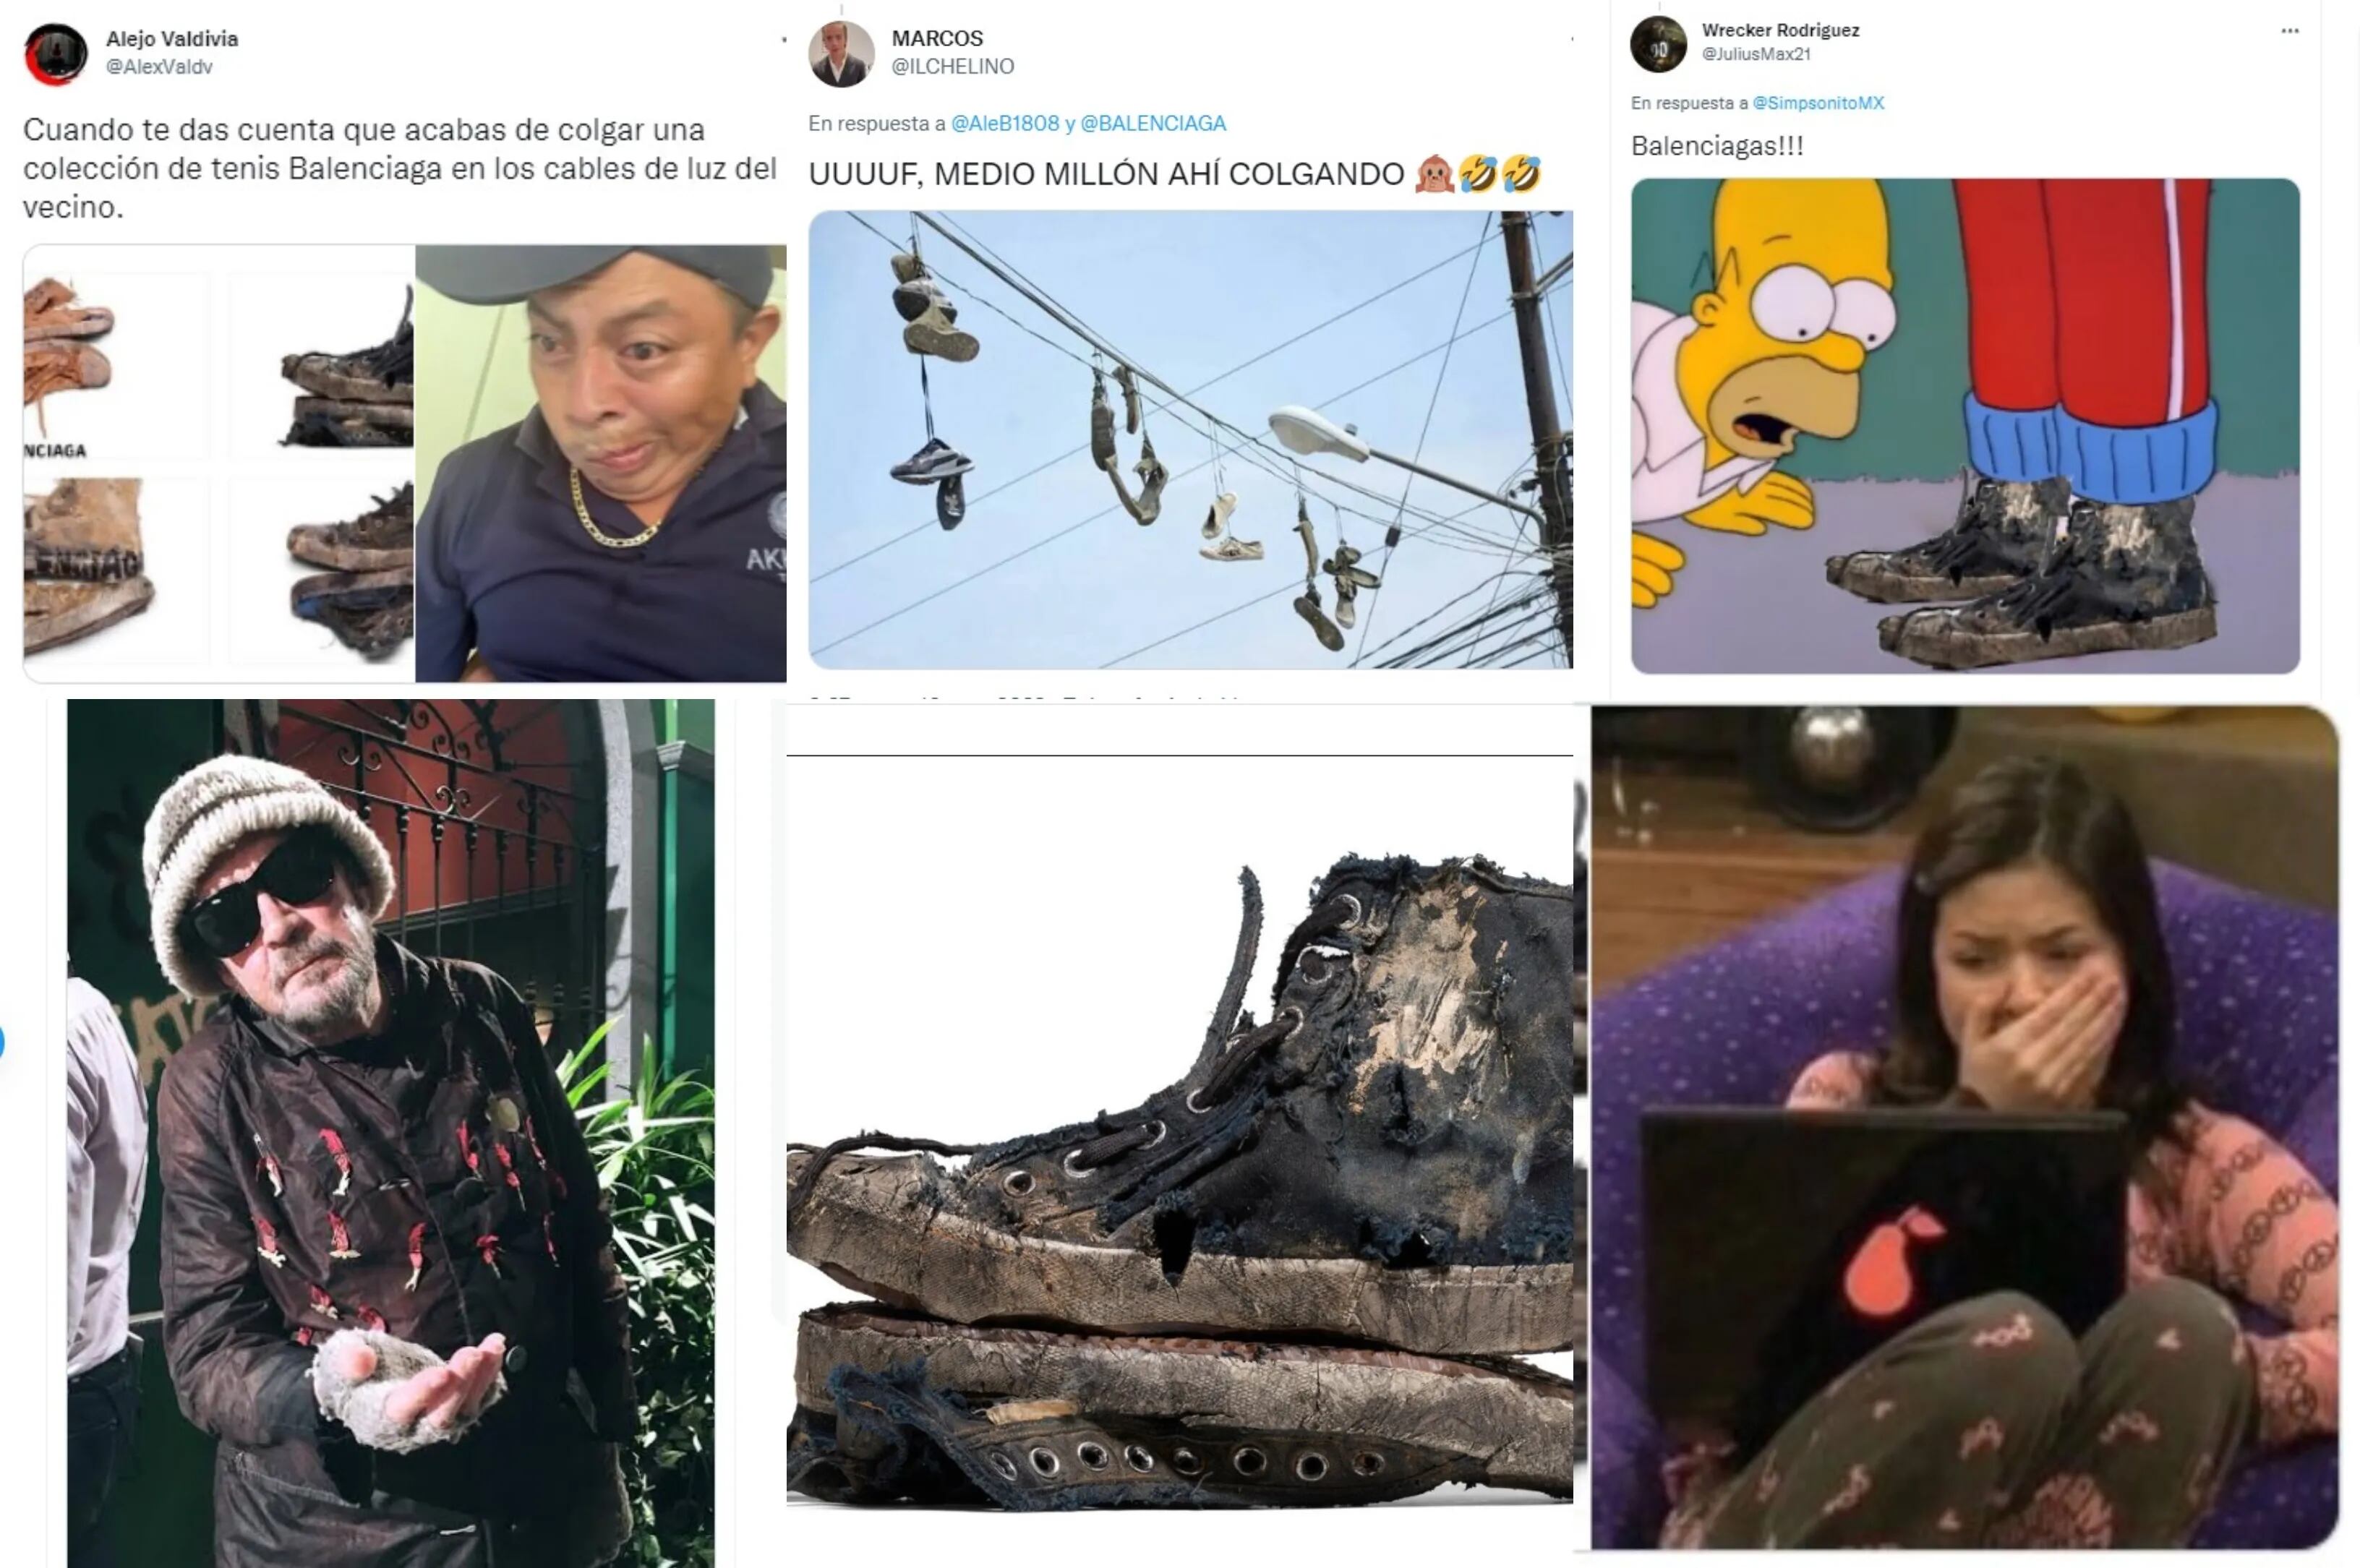 Balenciaga lanzó su nueva línea de zapatillas “sucias” y los memes las destrozaron en las redes: “Haciendo el ridículo”